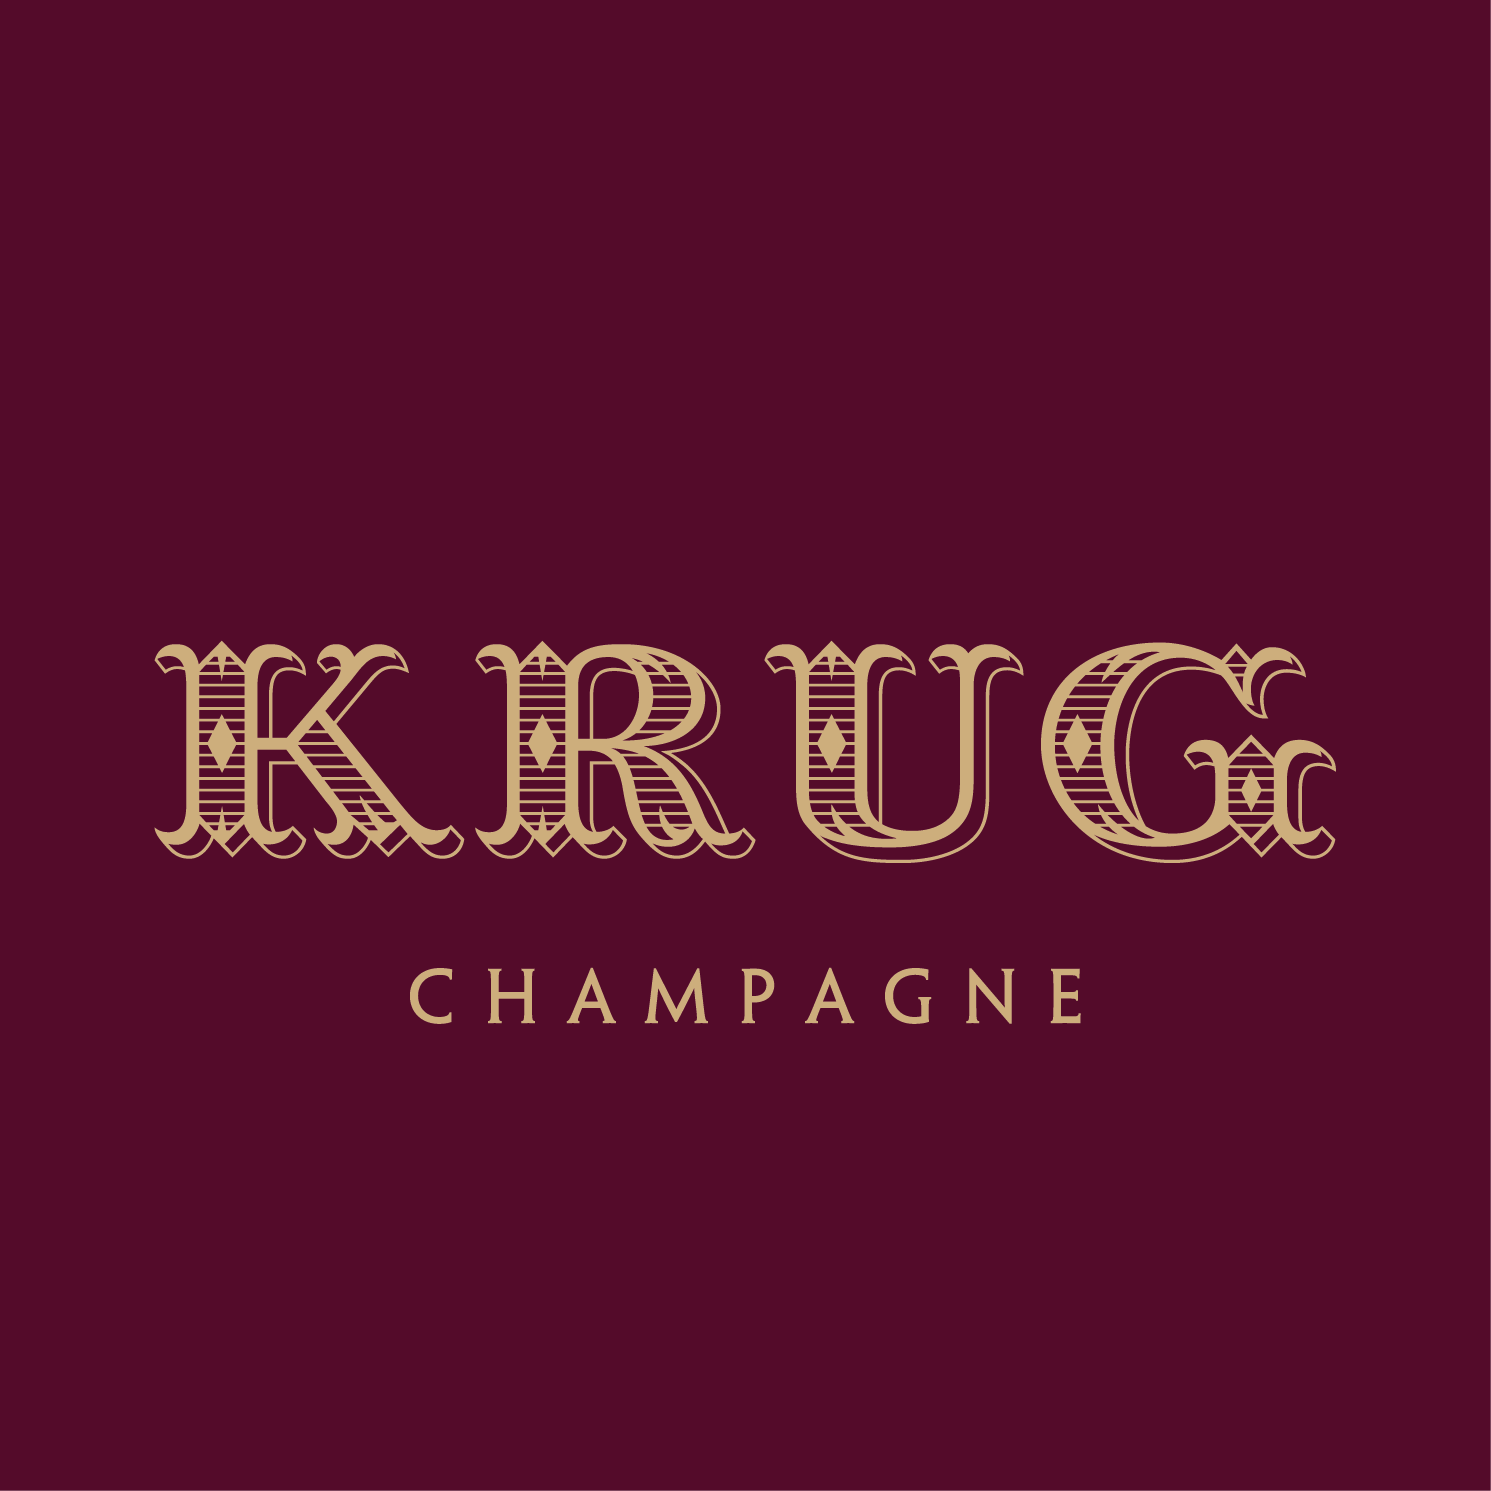 N.V. Krug Champagne Brut Grande Cuvée 2nd Generation (1982/83-1995/96) -  CellarTracker